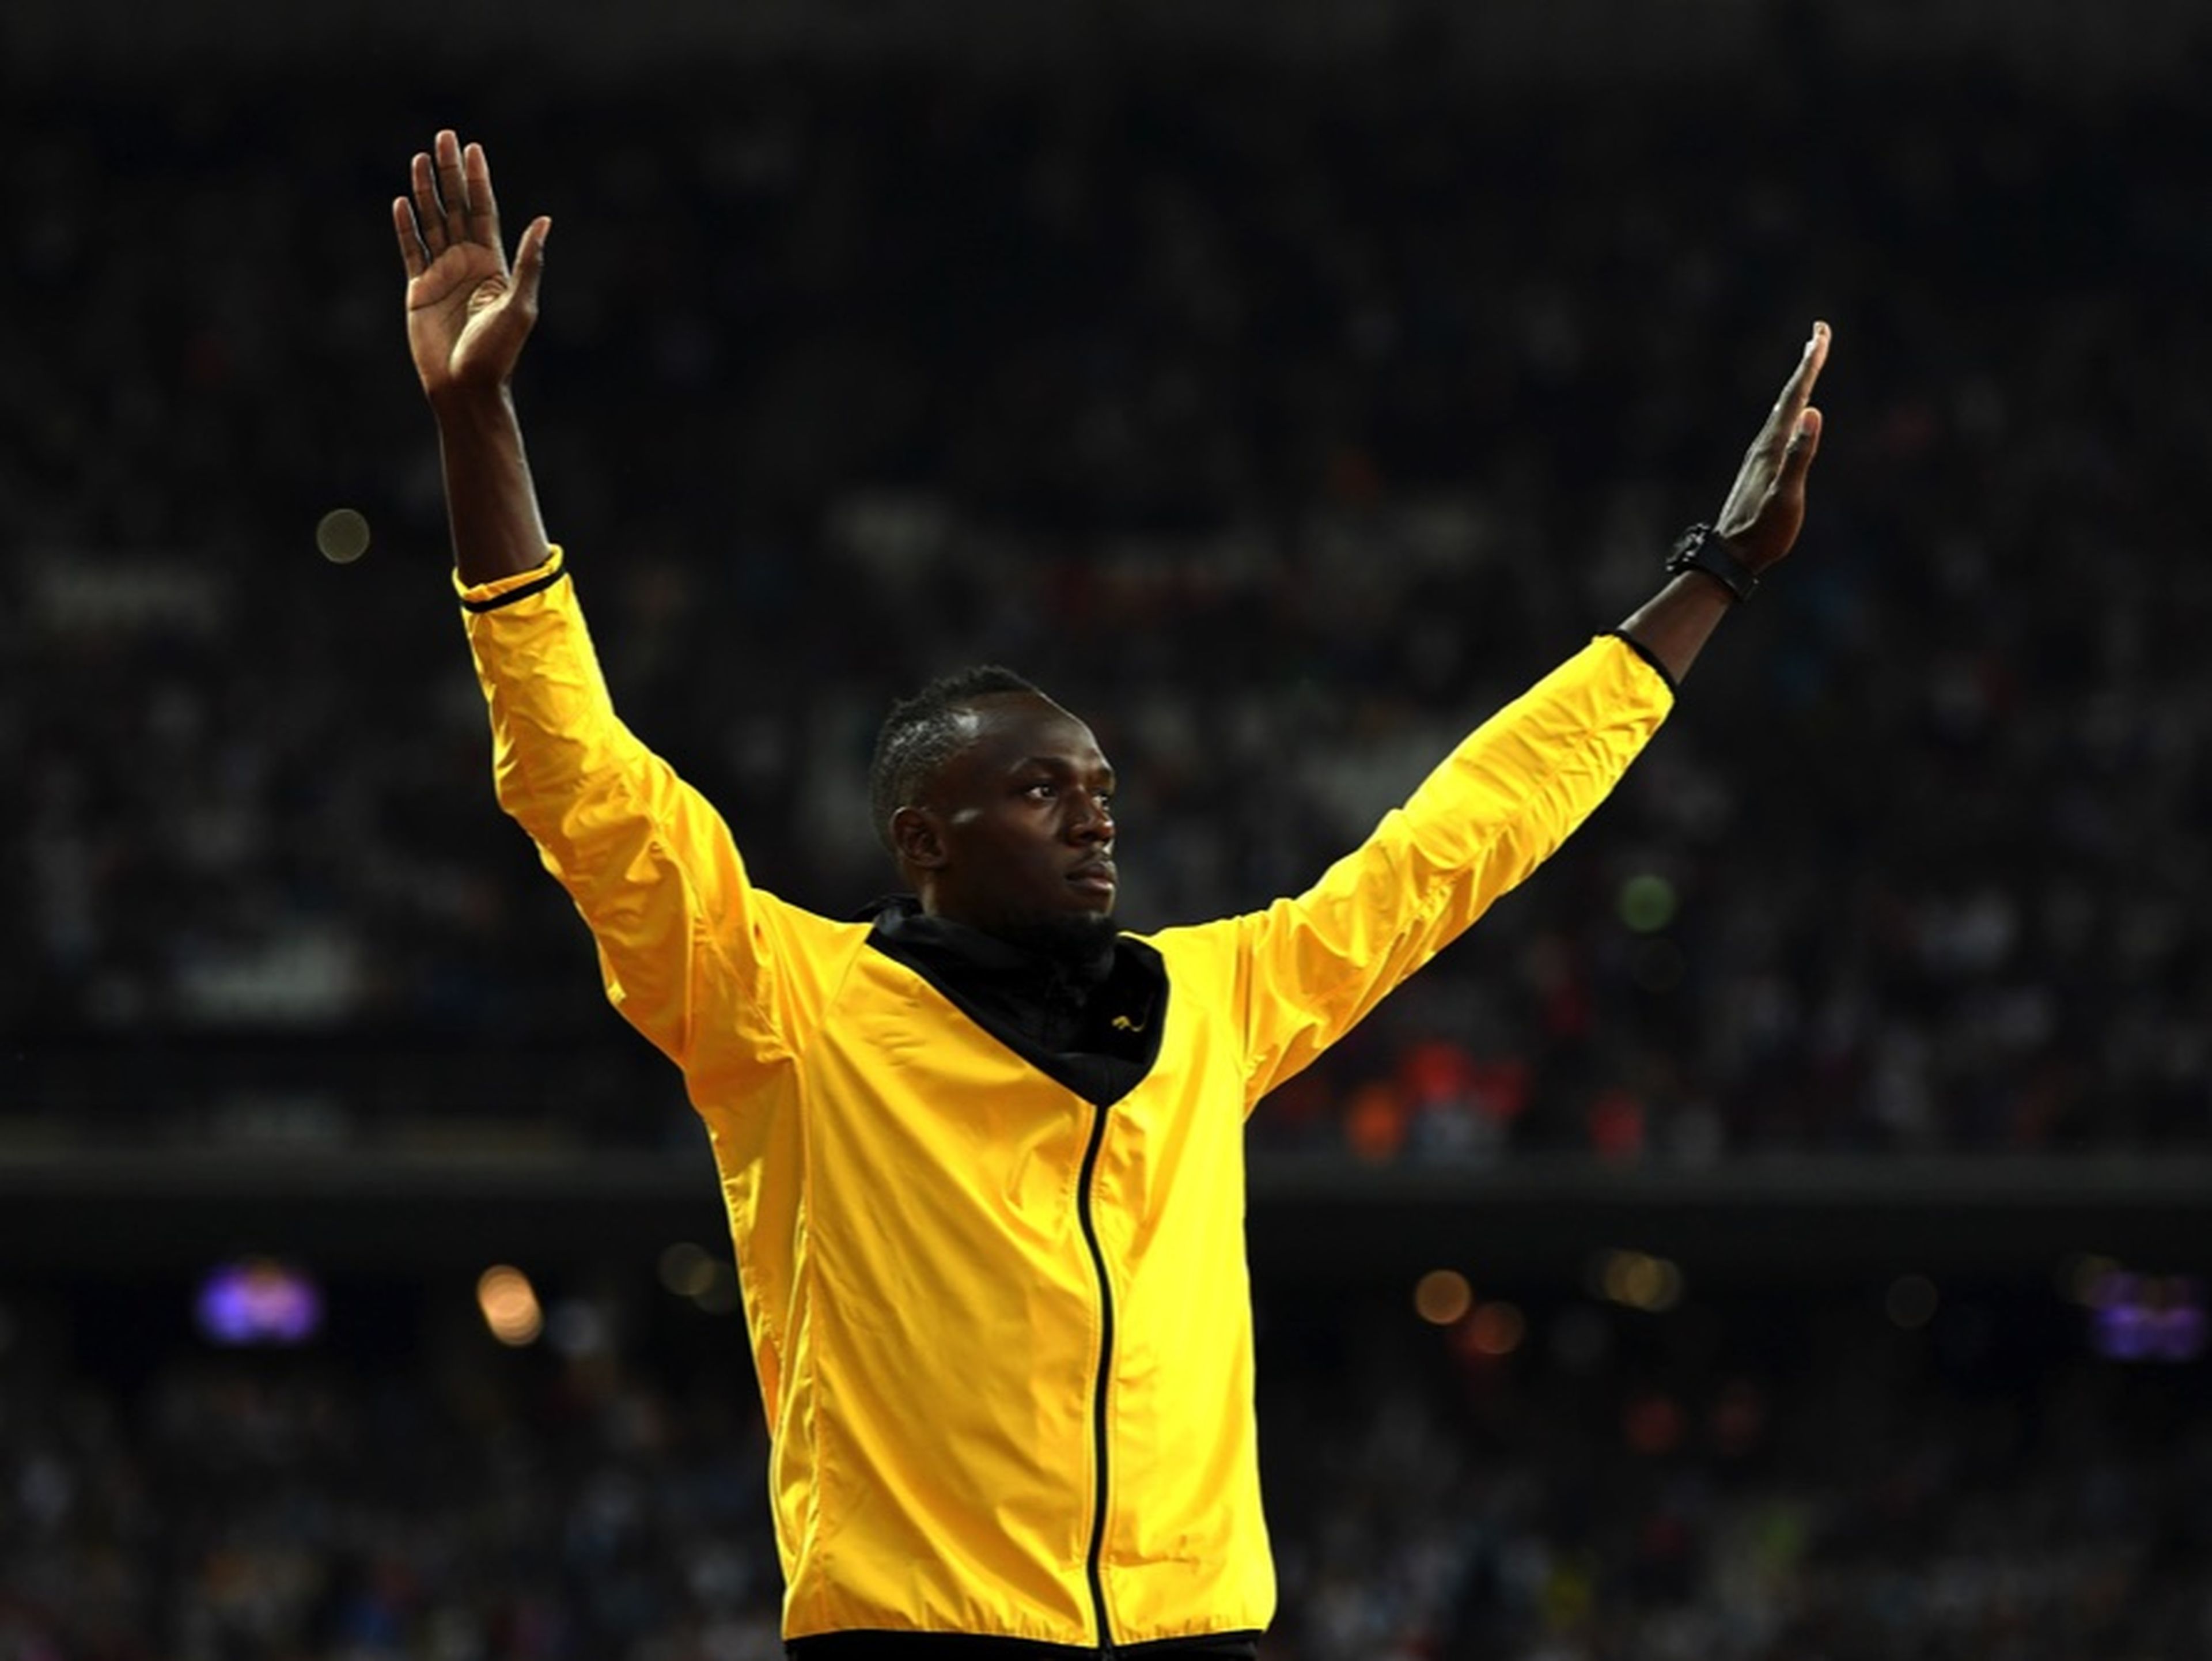 fotos deporte 2017: Usain Bolt les dio a los fans una gran despedida después de su última carrera en el Campeonato Mundial de Atletismo de la IAAF